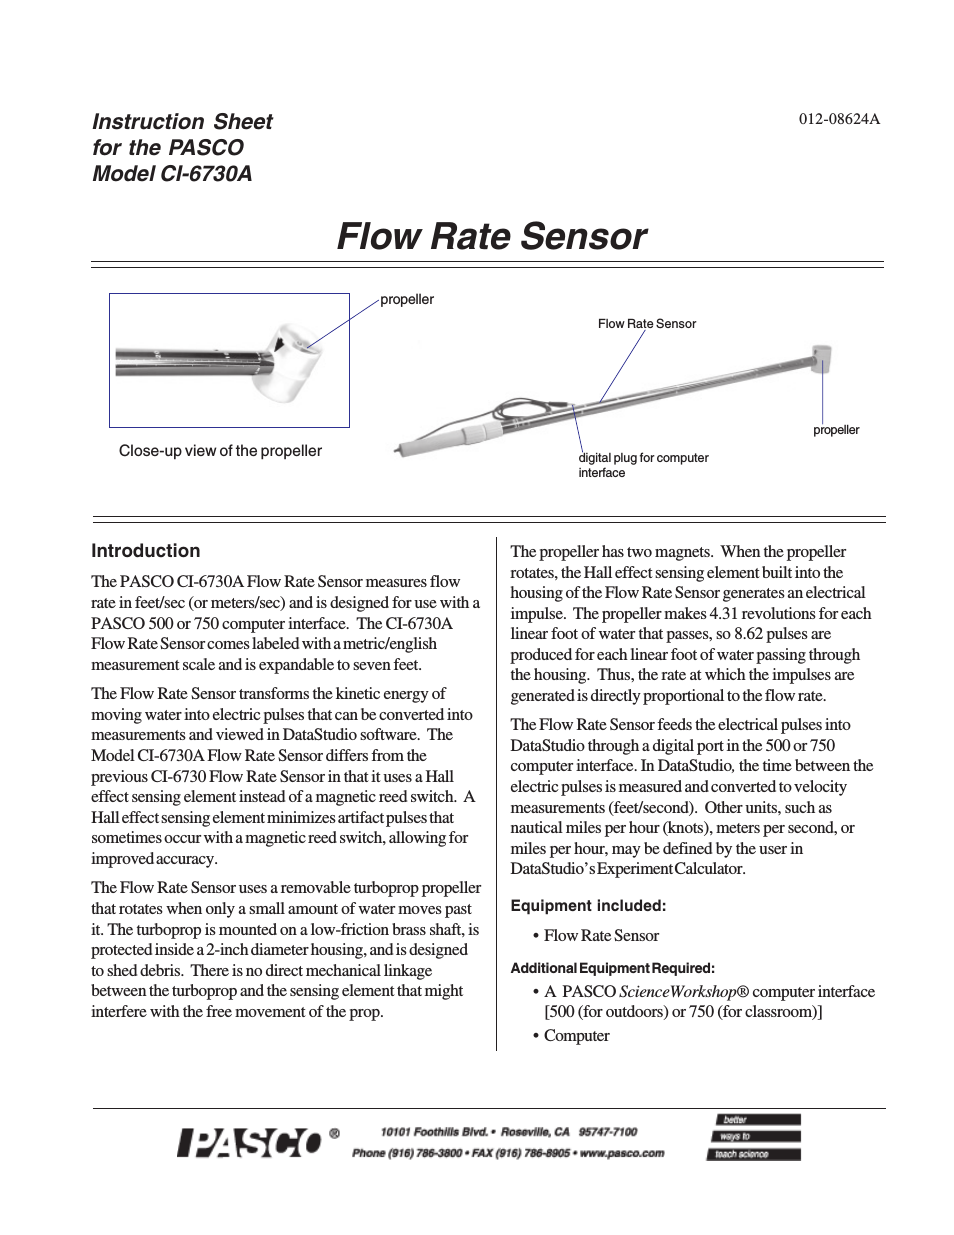 CI-6730A Flow Rate Sensor